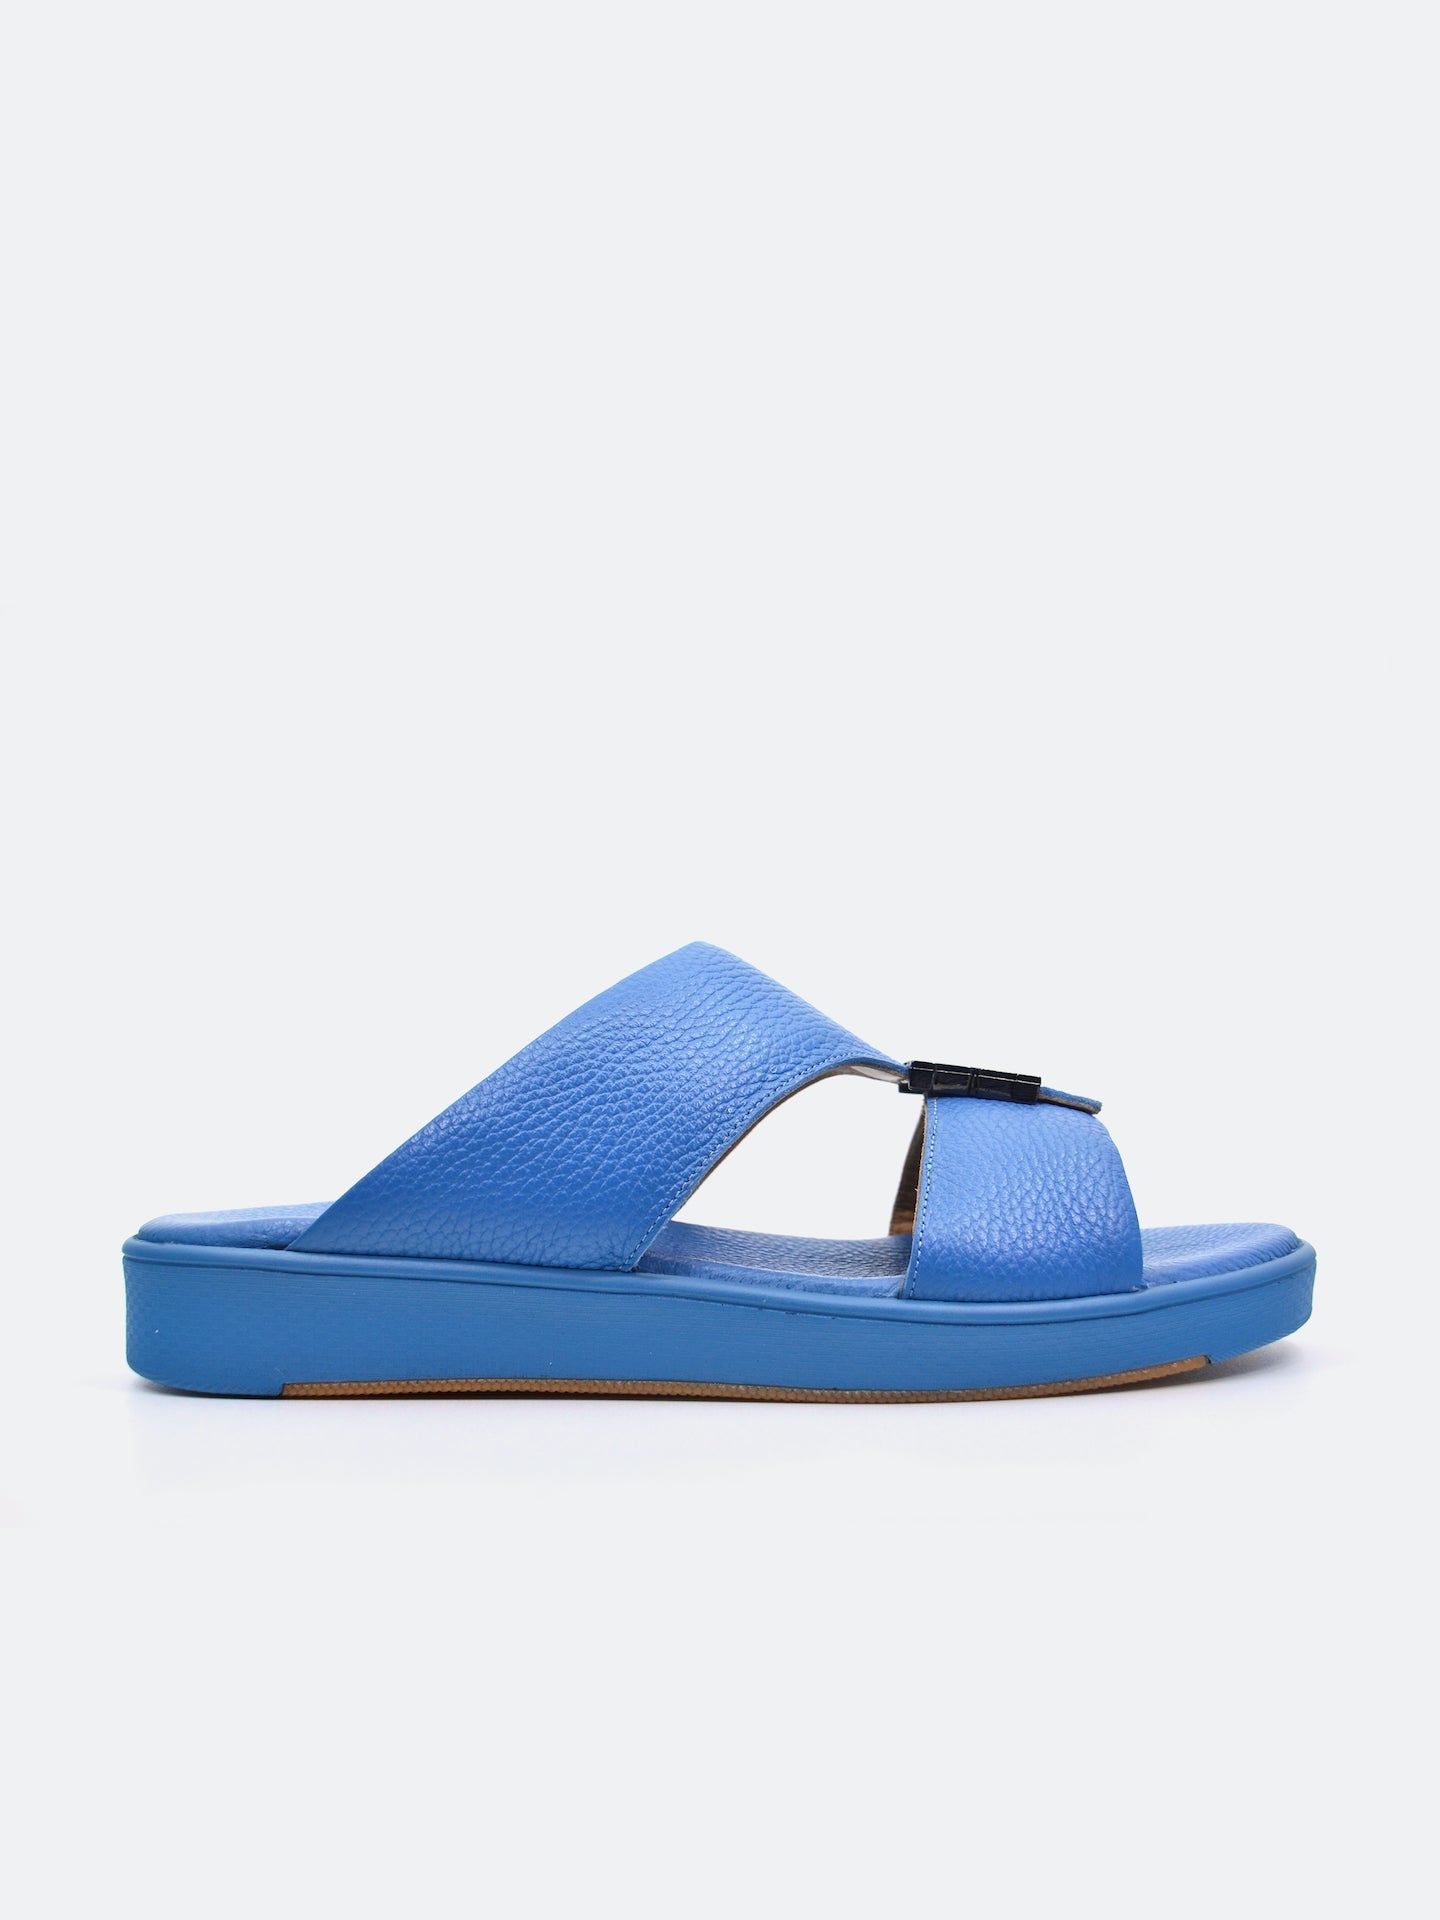 Barjeel Uno SP1-012 Boys Arabic Sandals #color_Blue